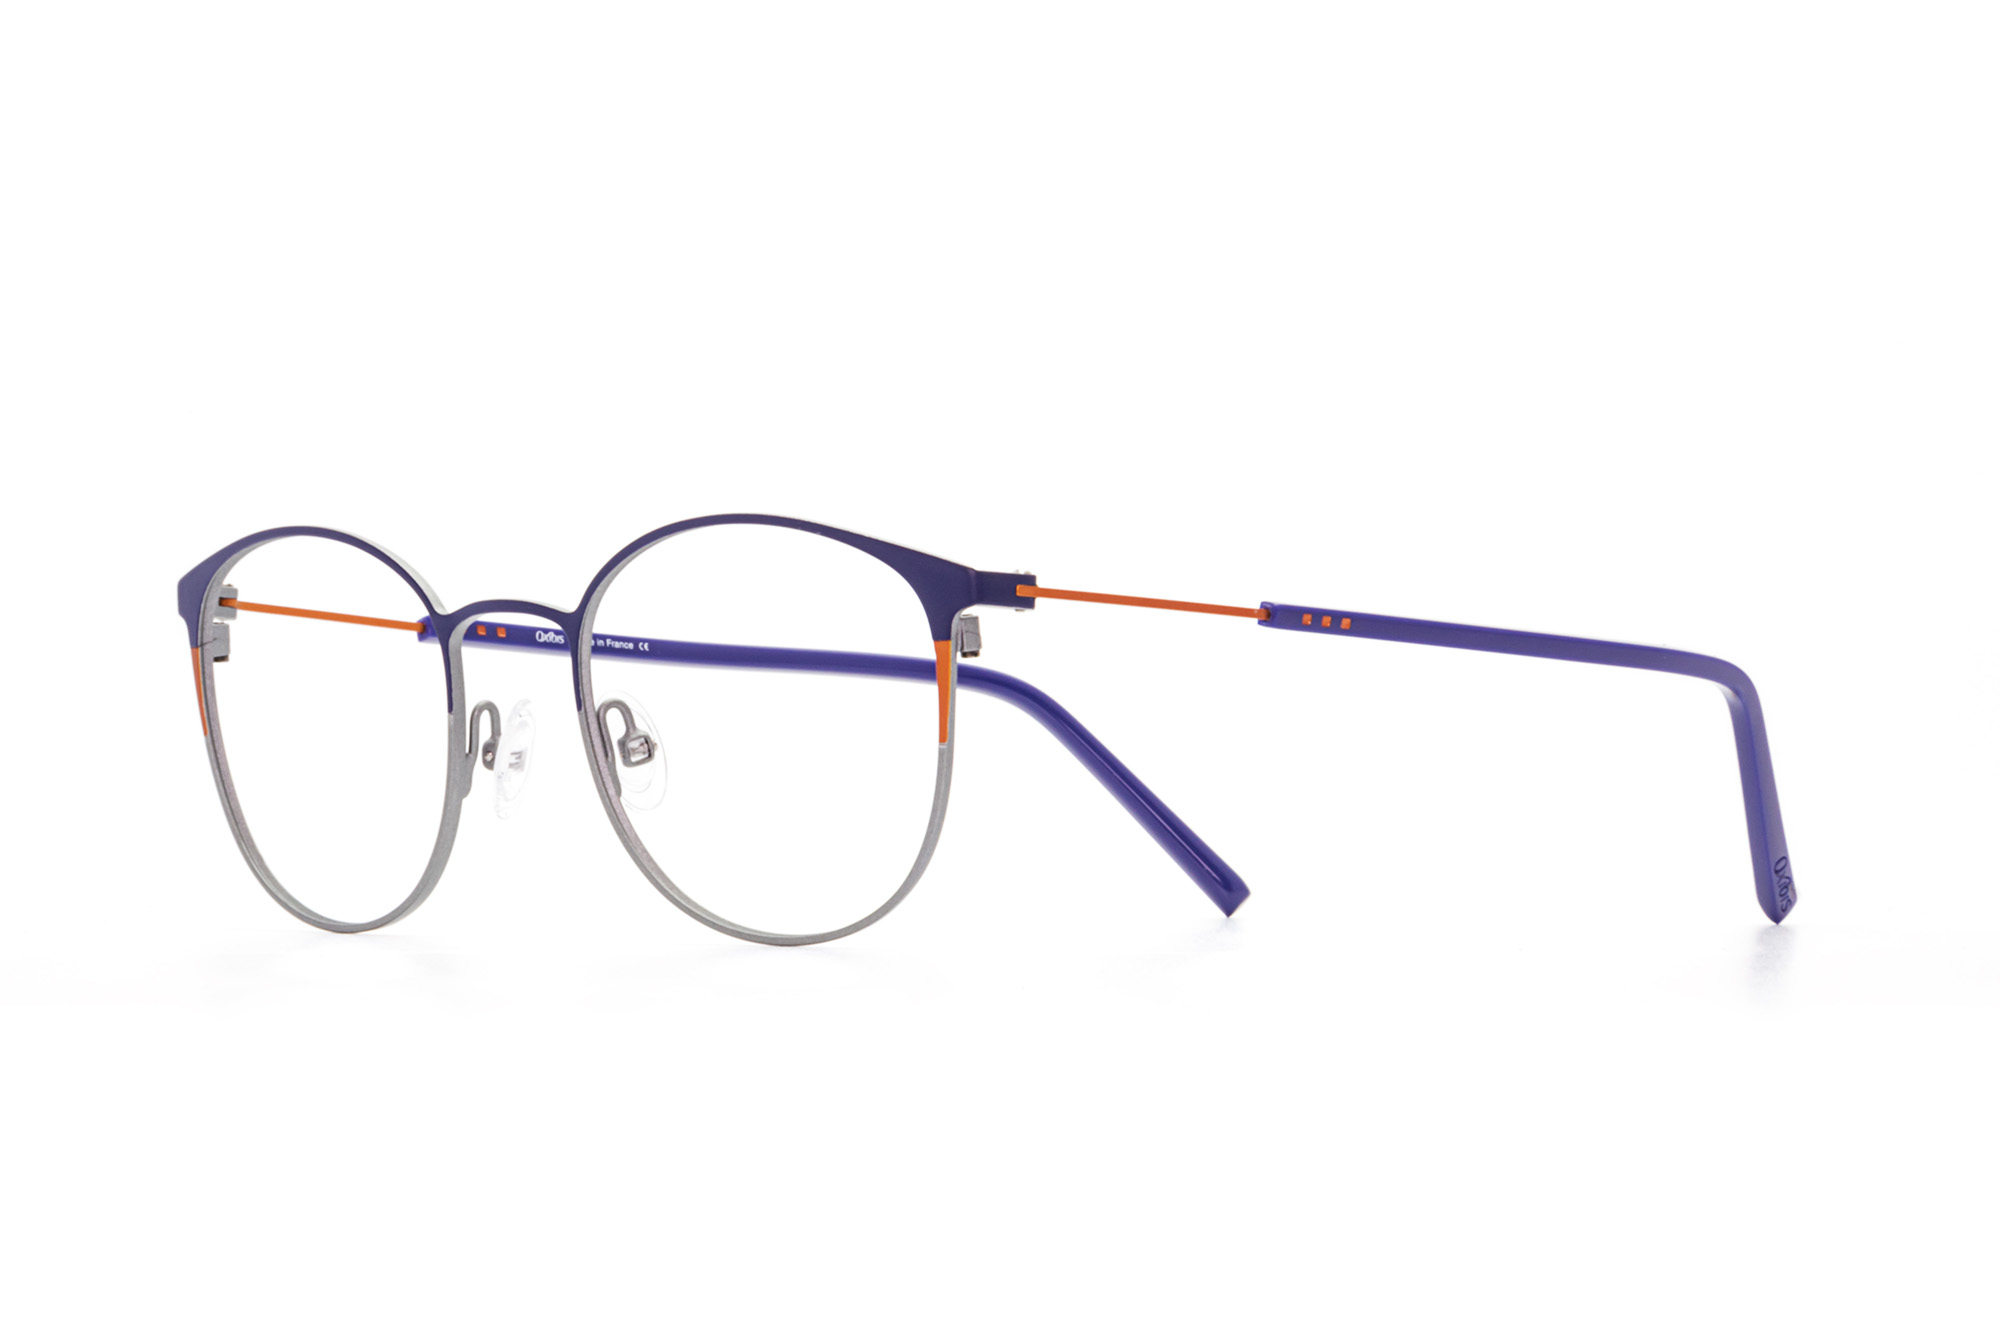 Oxibis Boost 1 BO1C6 49 küçük ekartman mavi, turuncu ve gri renkli yuvarlak model numaralı unisex optik gözlük çerçevesi